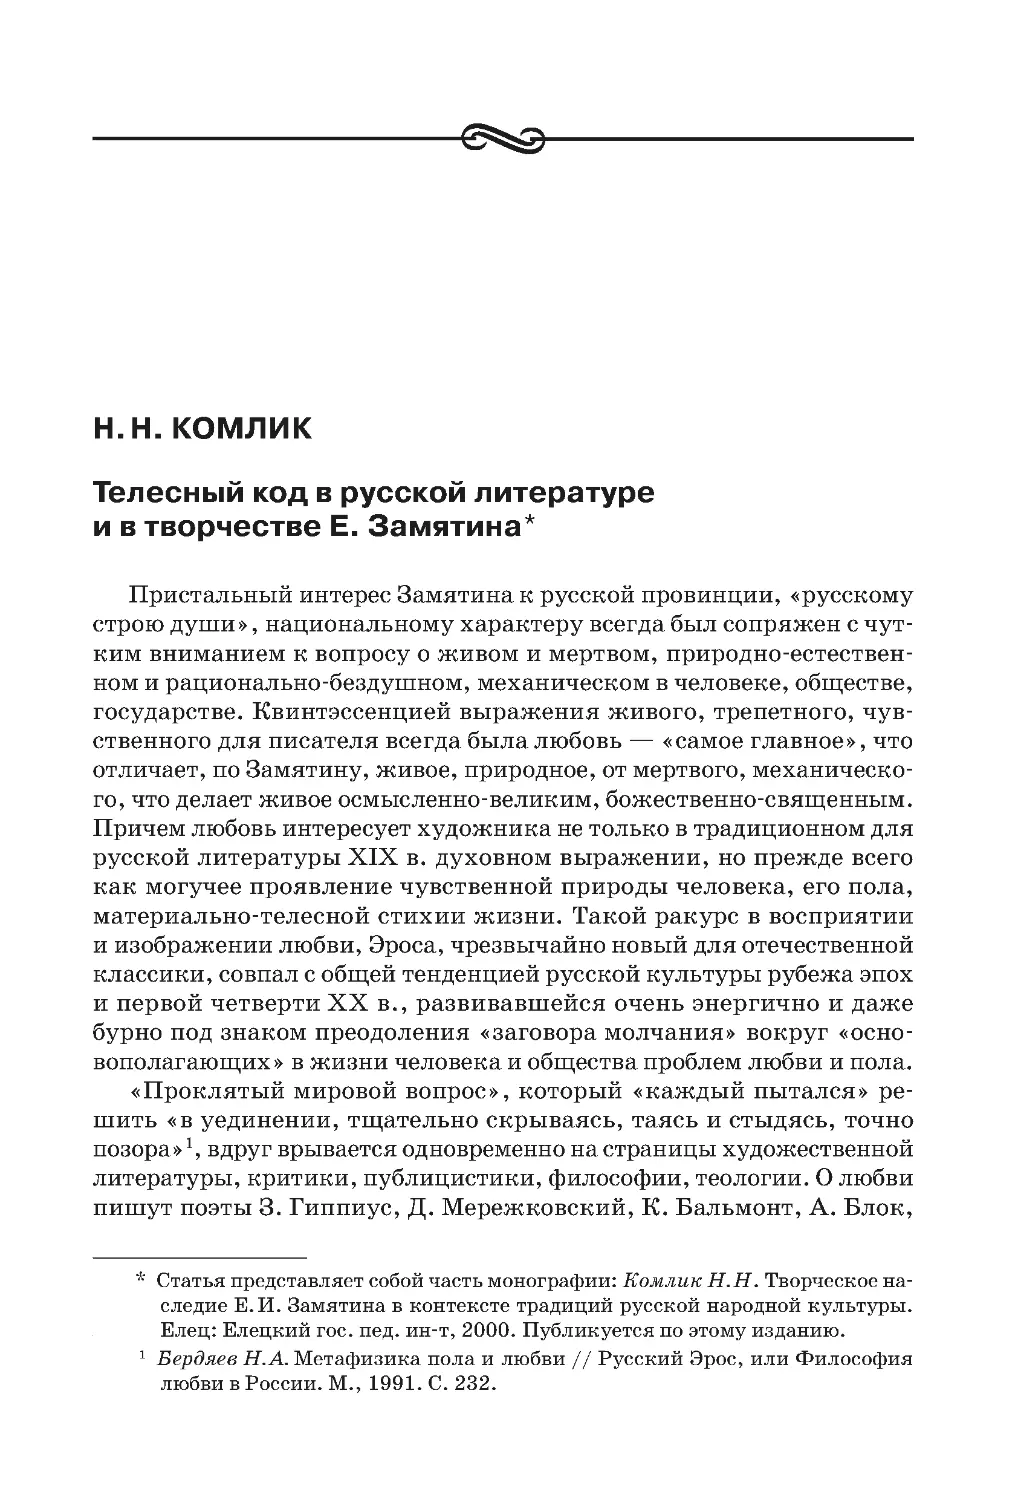 Н.Н. Комлик. Телесный код в русской литературе и в творчестве Е. Замятина